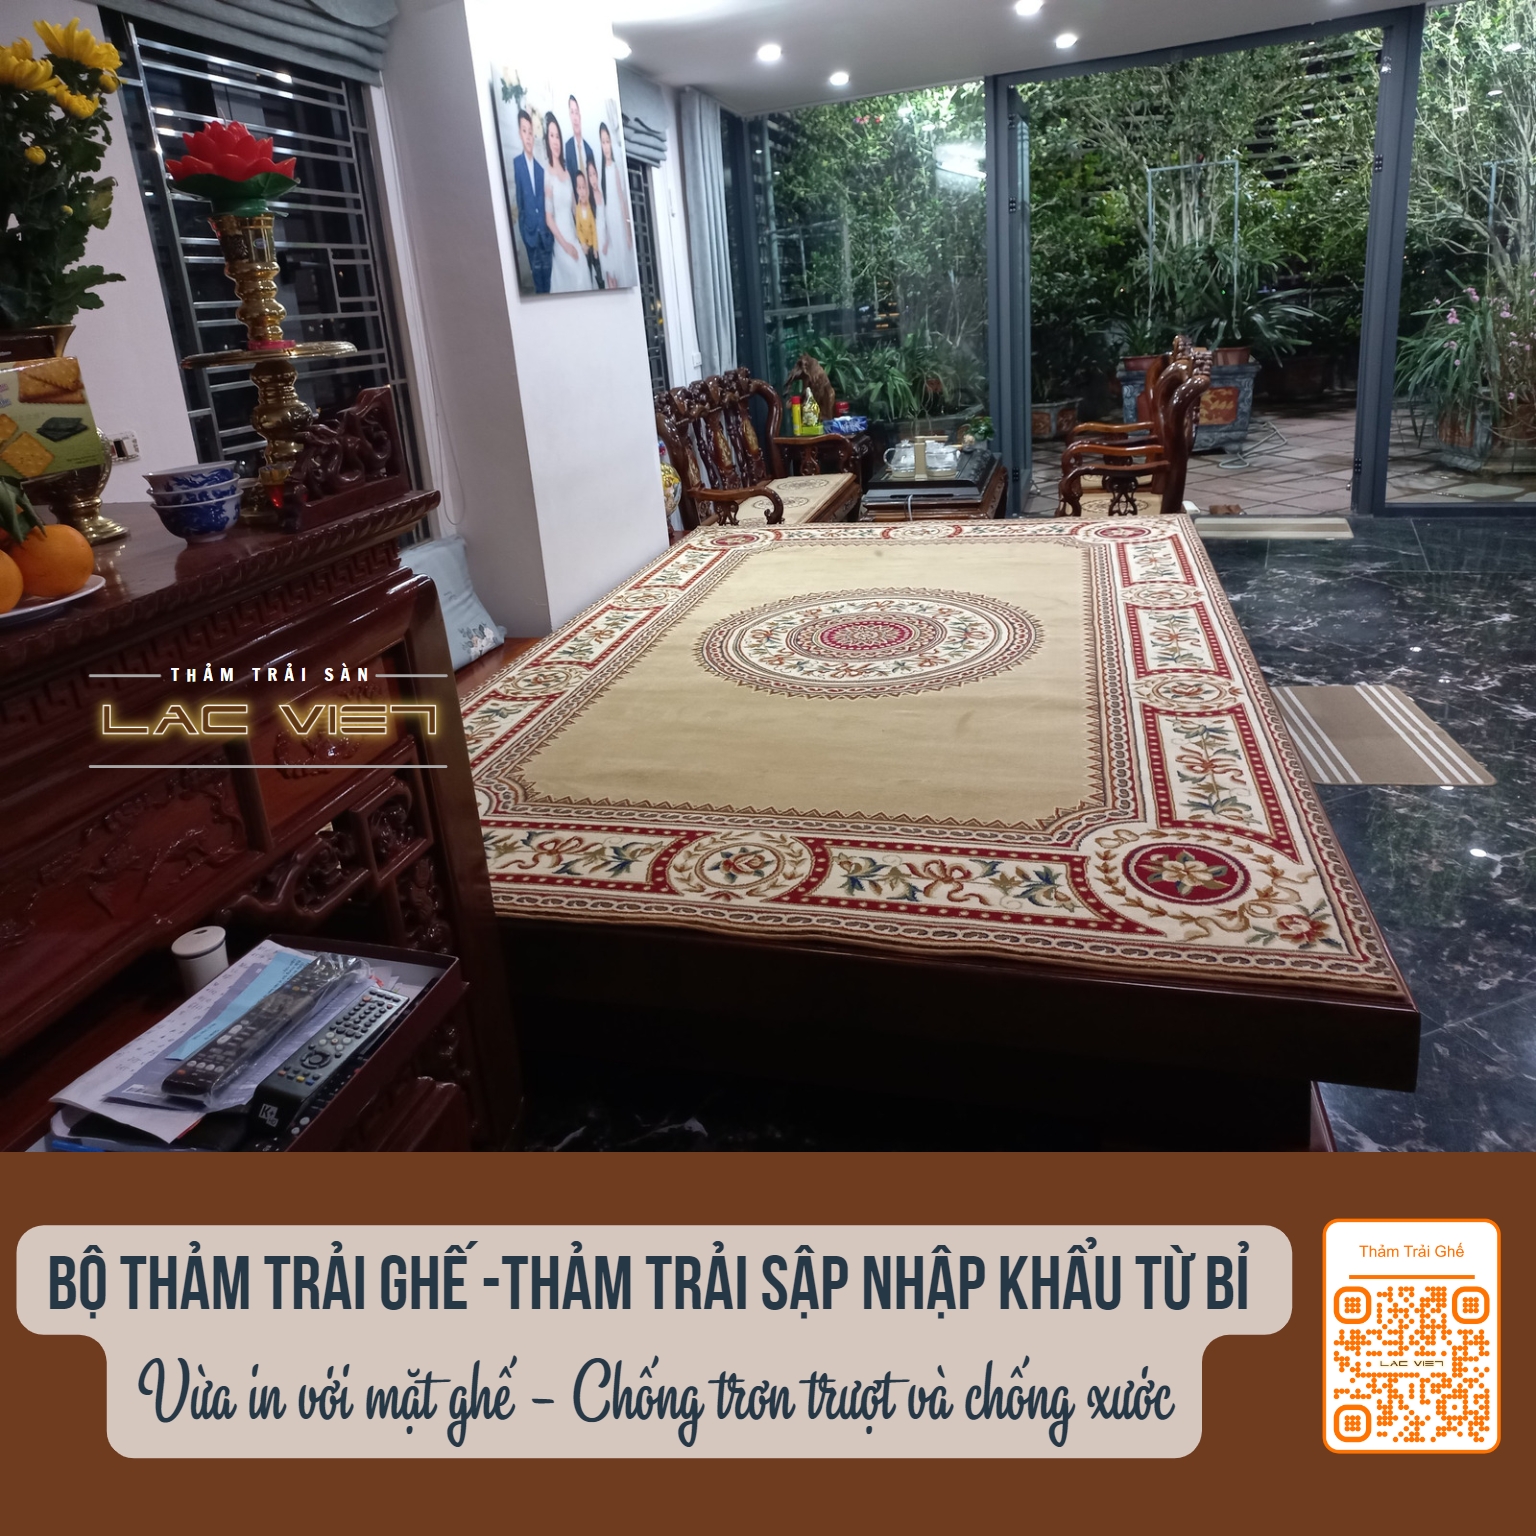 tham-trai-san-lac-viet-combo thảm trải sập và thảm trải ghế cho phòng thờ (2)